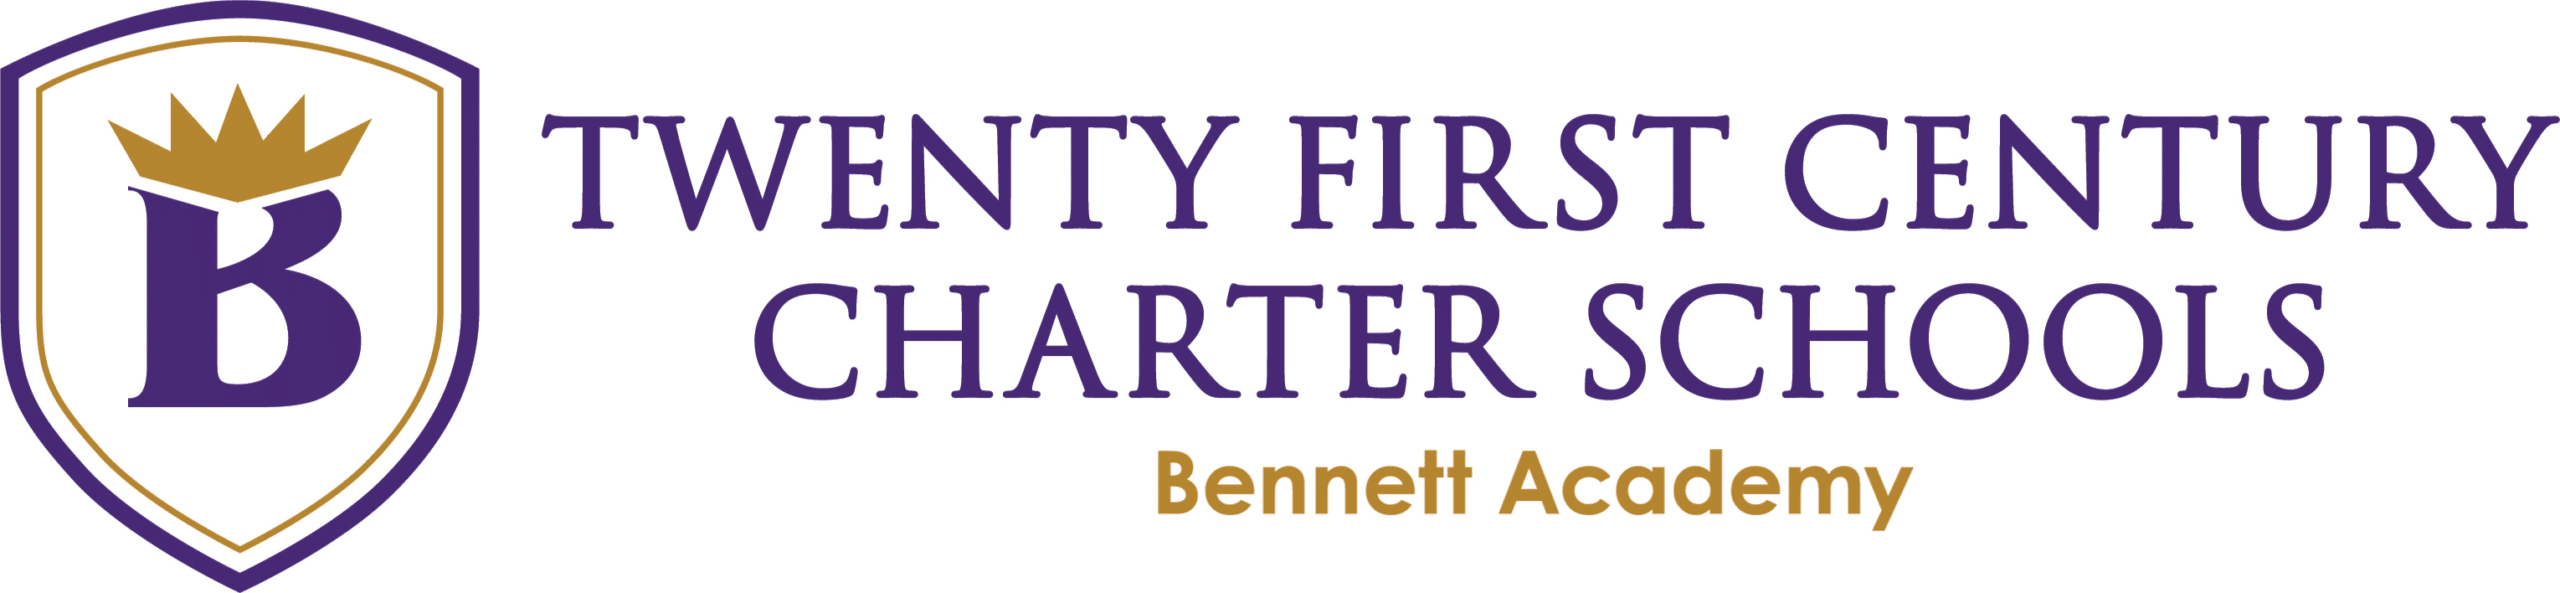 Twenty First Century Charter Schools - Bennett Academy Header Logo